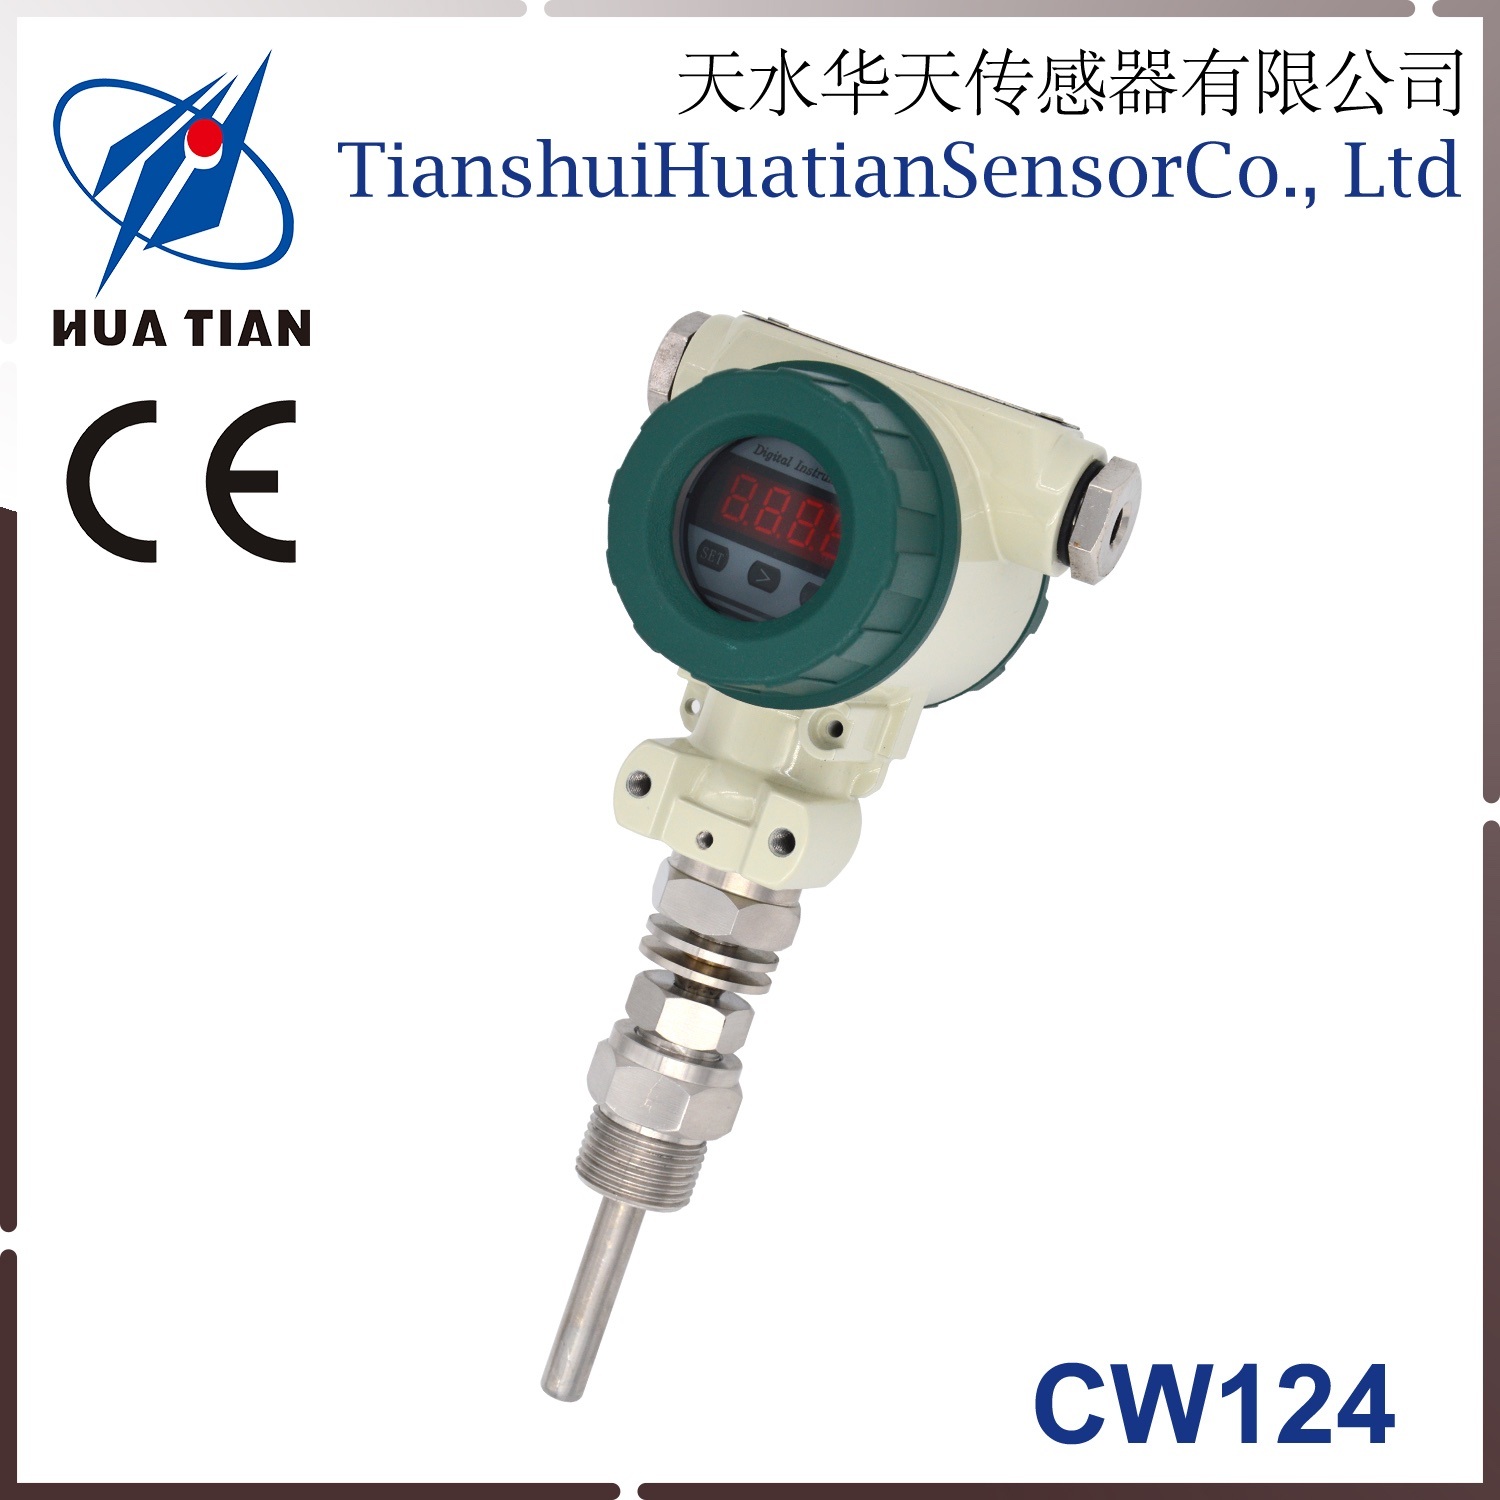 Cw124 Digital Display Temperature Transmitter